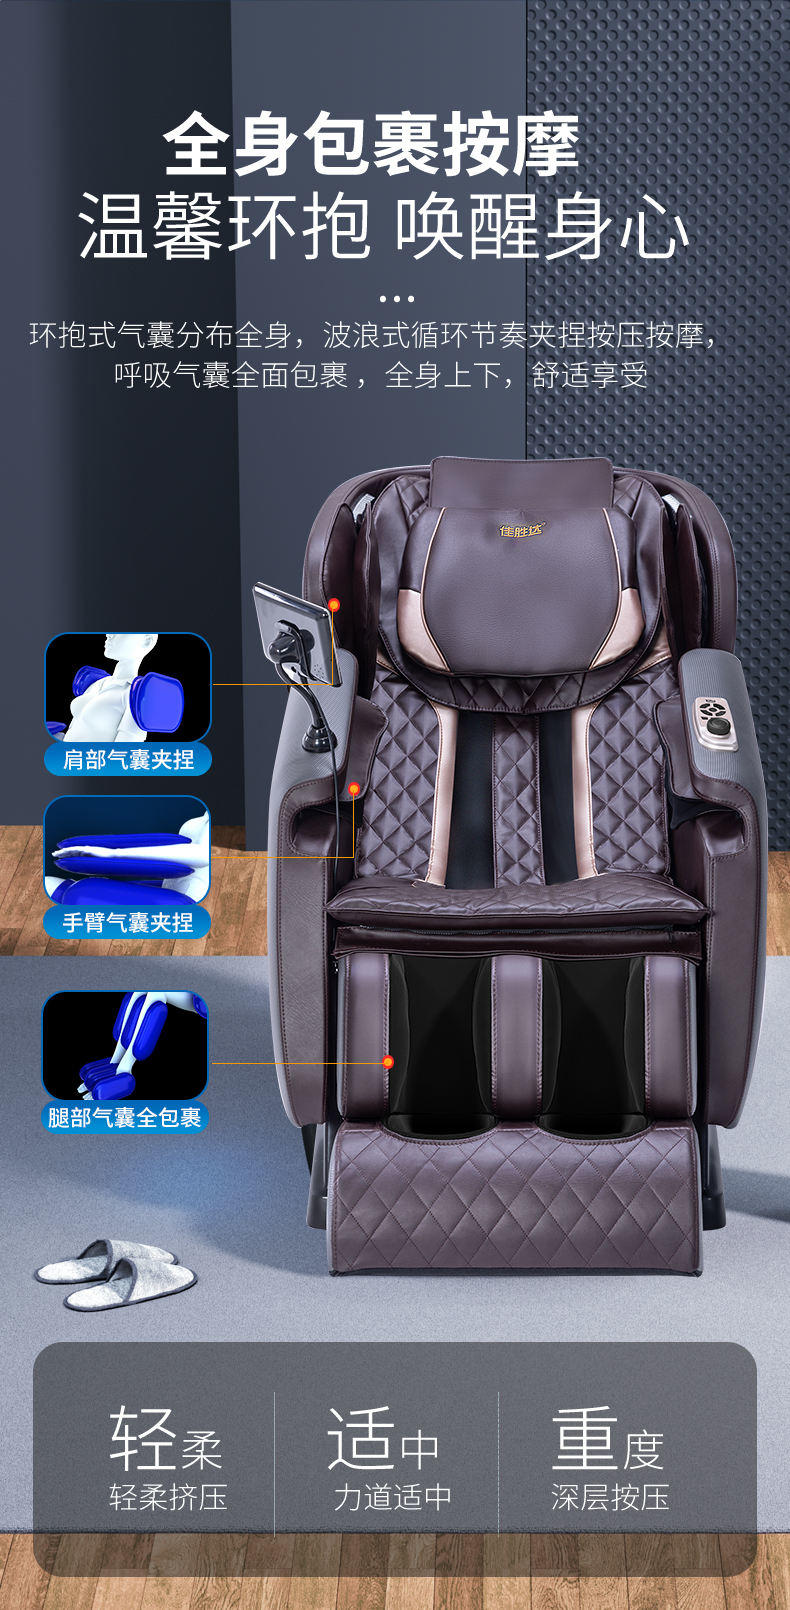 佳胜达A7SL按摩椅机械手智能语音家用按摩椅白棕色JSD-120wamyA7SL